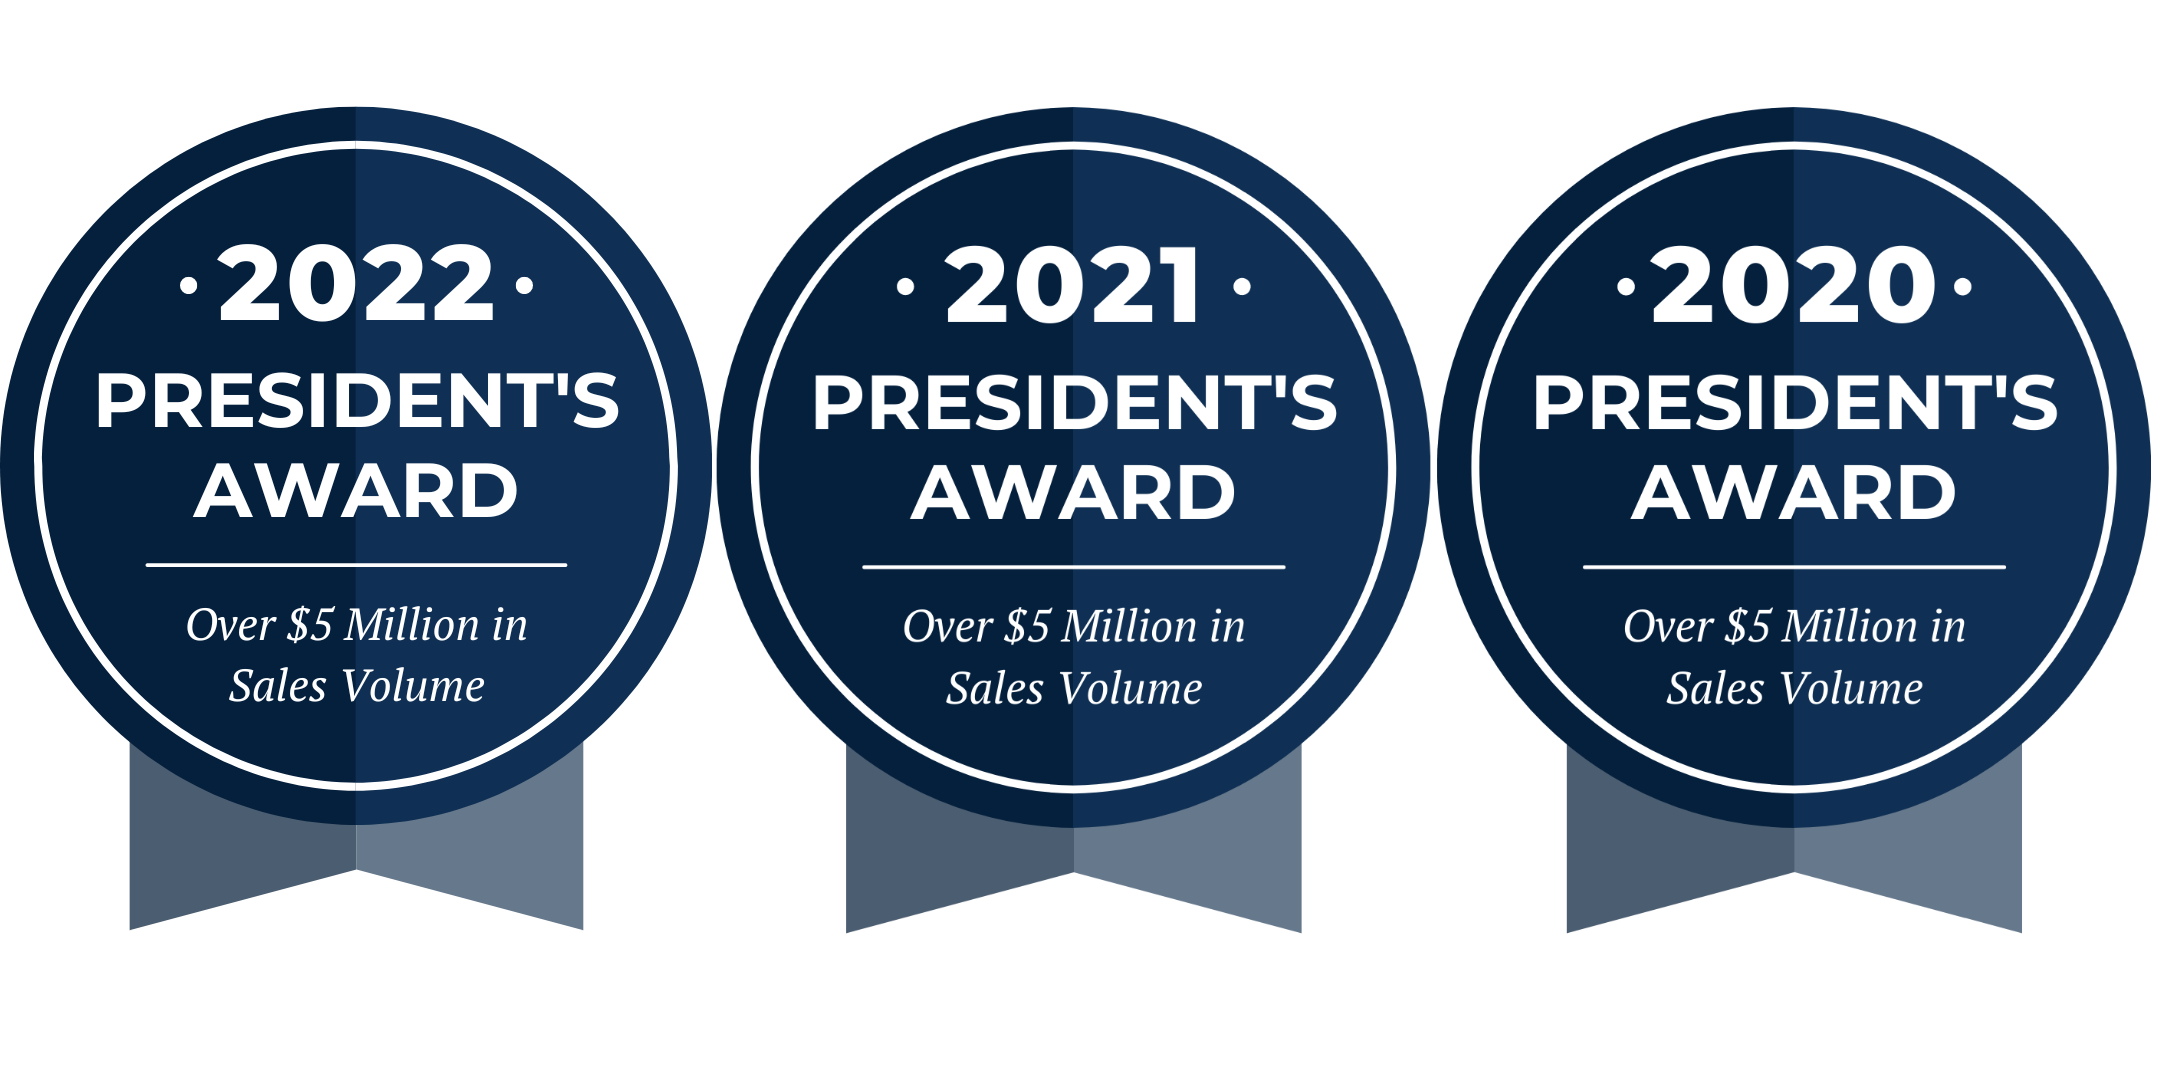 2022 President's Award, 2021 President's Award, 2020 President's Award